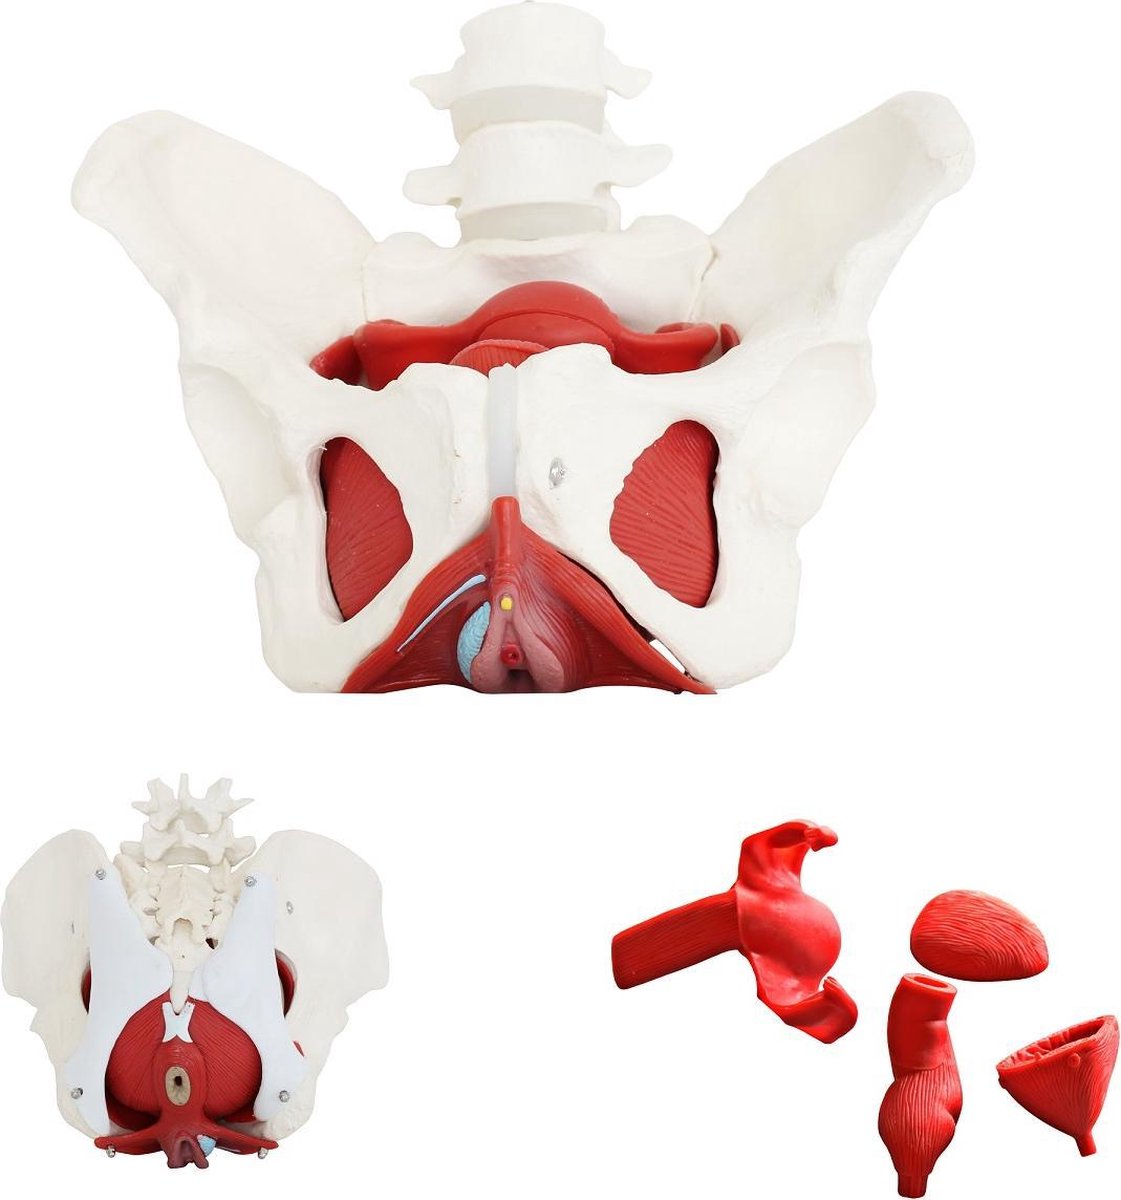 Het menselijk lichaam - anatomie model bekken, bekkenbodemspieren en organen, vrouw